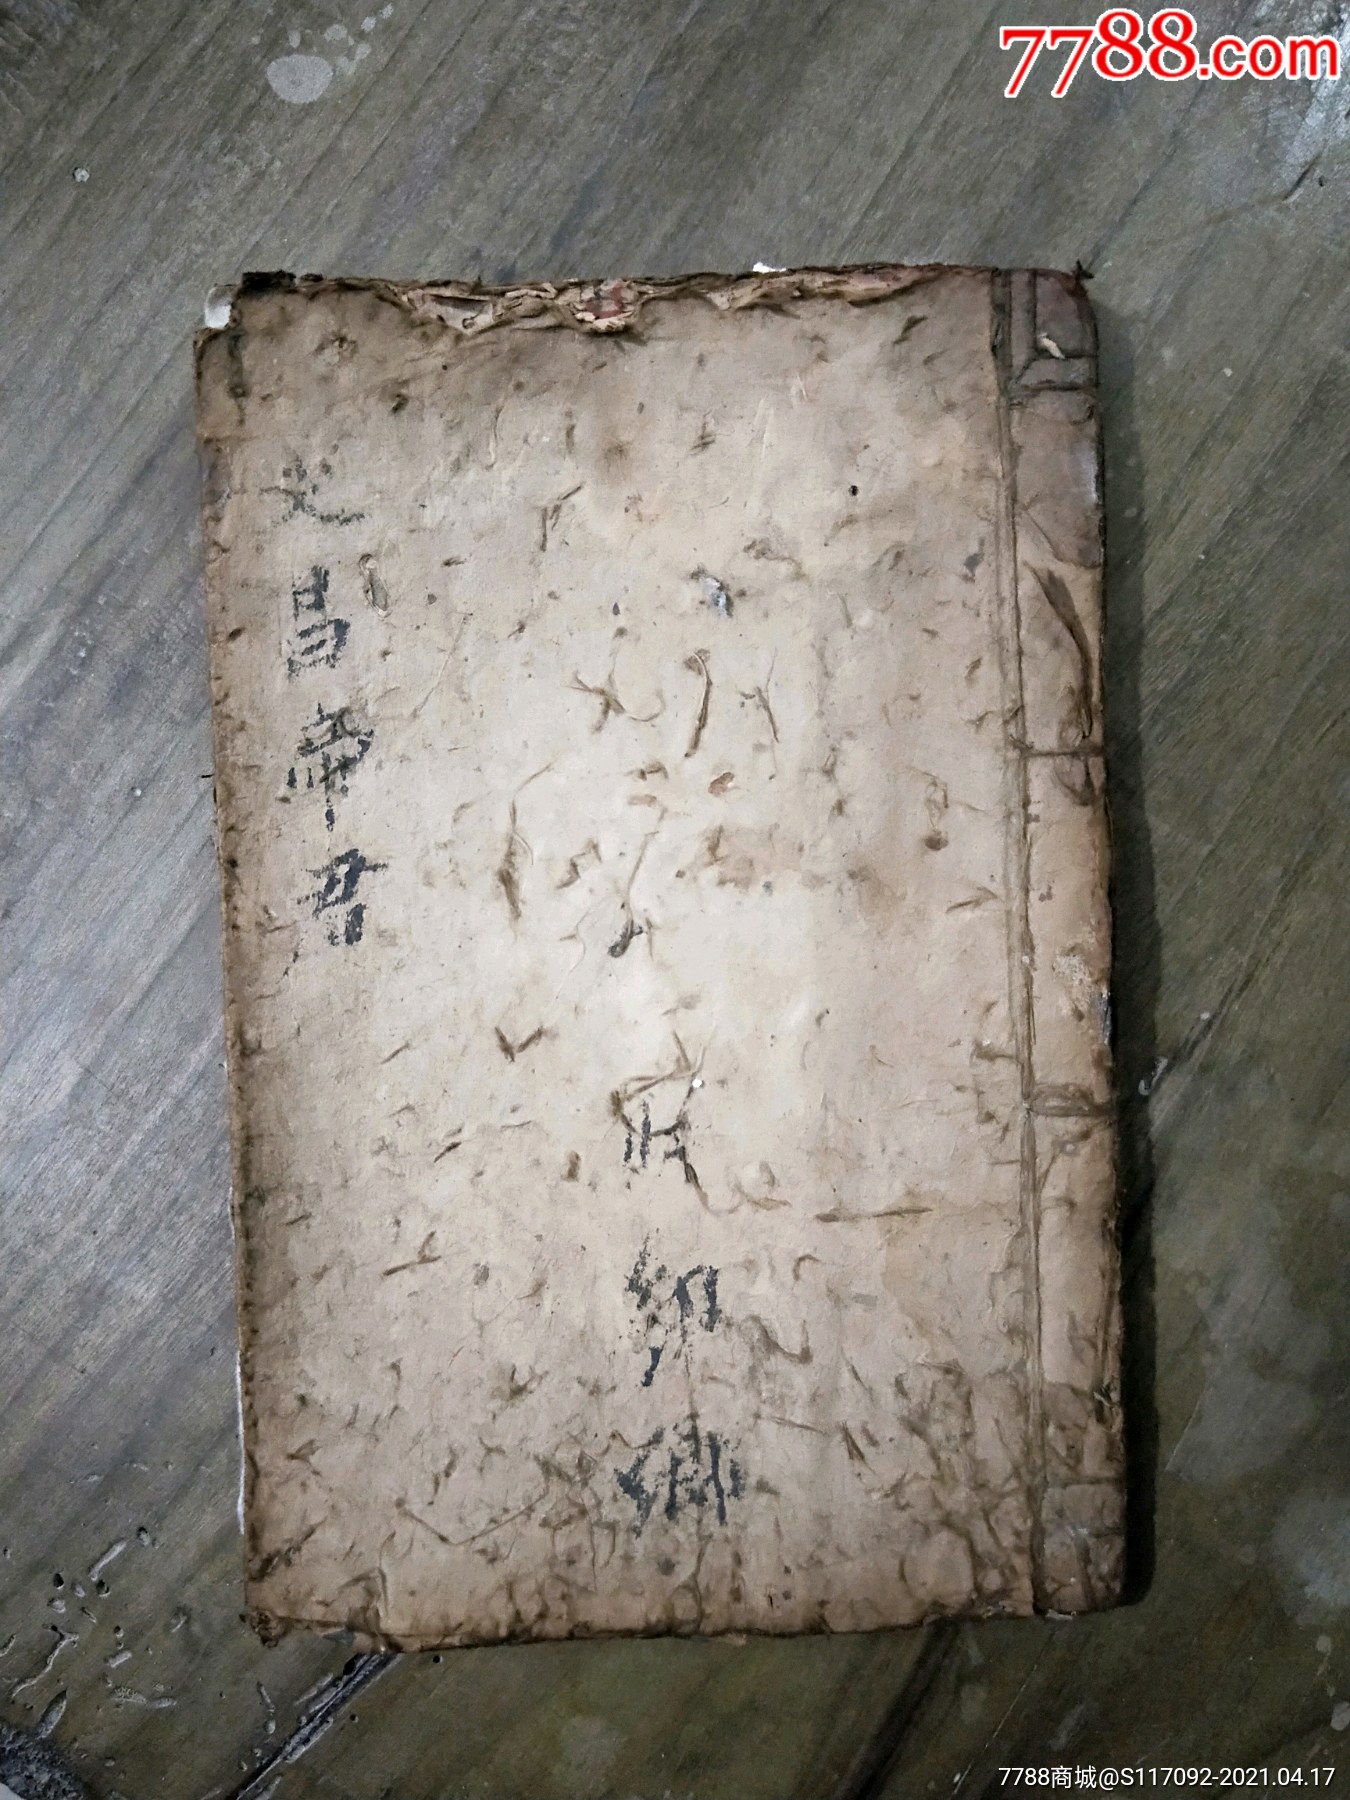 中国文字 | 从汉字演变看中国书法艺术